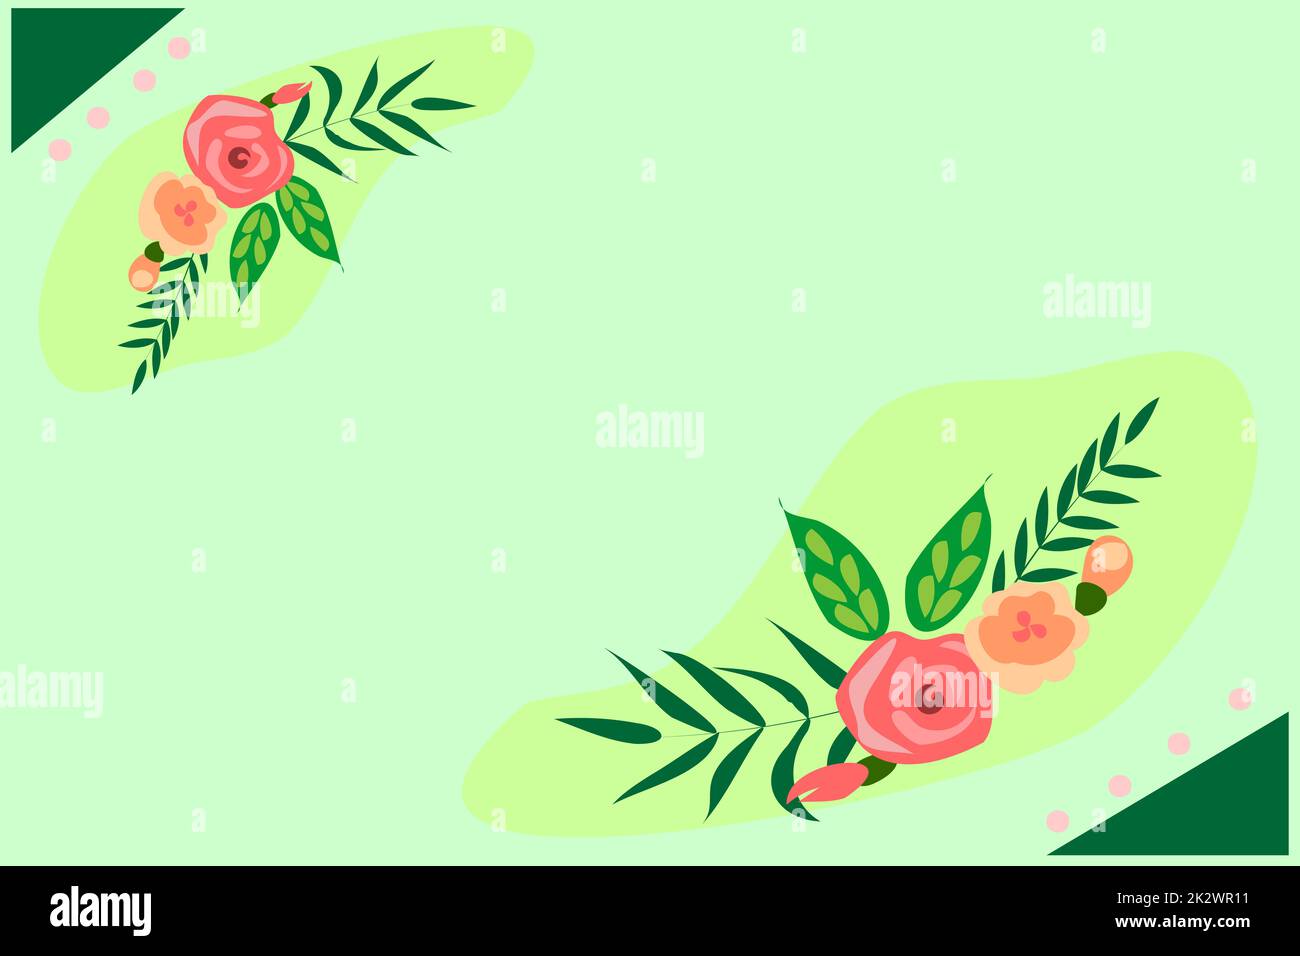 Textrahmen Umgeben Von Verschiedenen Blumen, Herzen Und Blättern. Rahmen Für Das Schreiben Von Ringed Mit Verschiedenen Gänseblümchen, Herzen Und Baumblättern Stockfoto